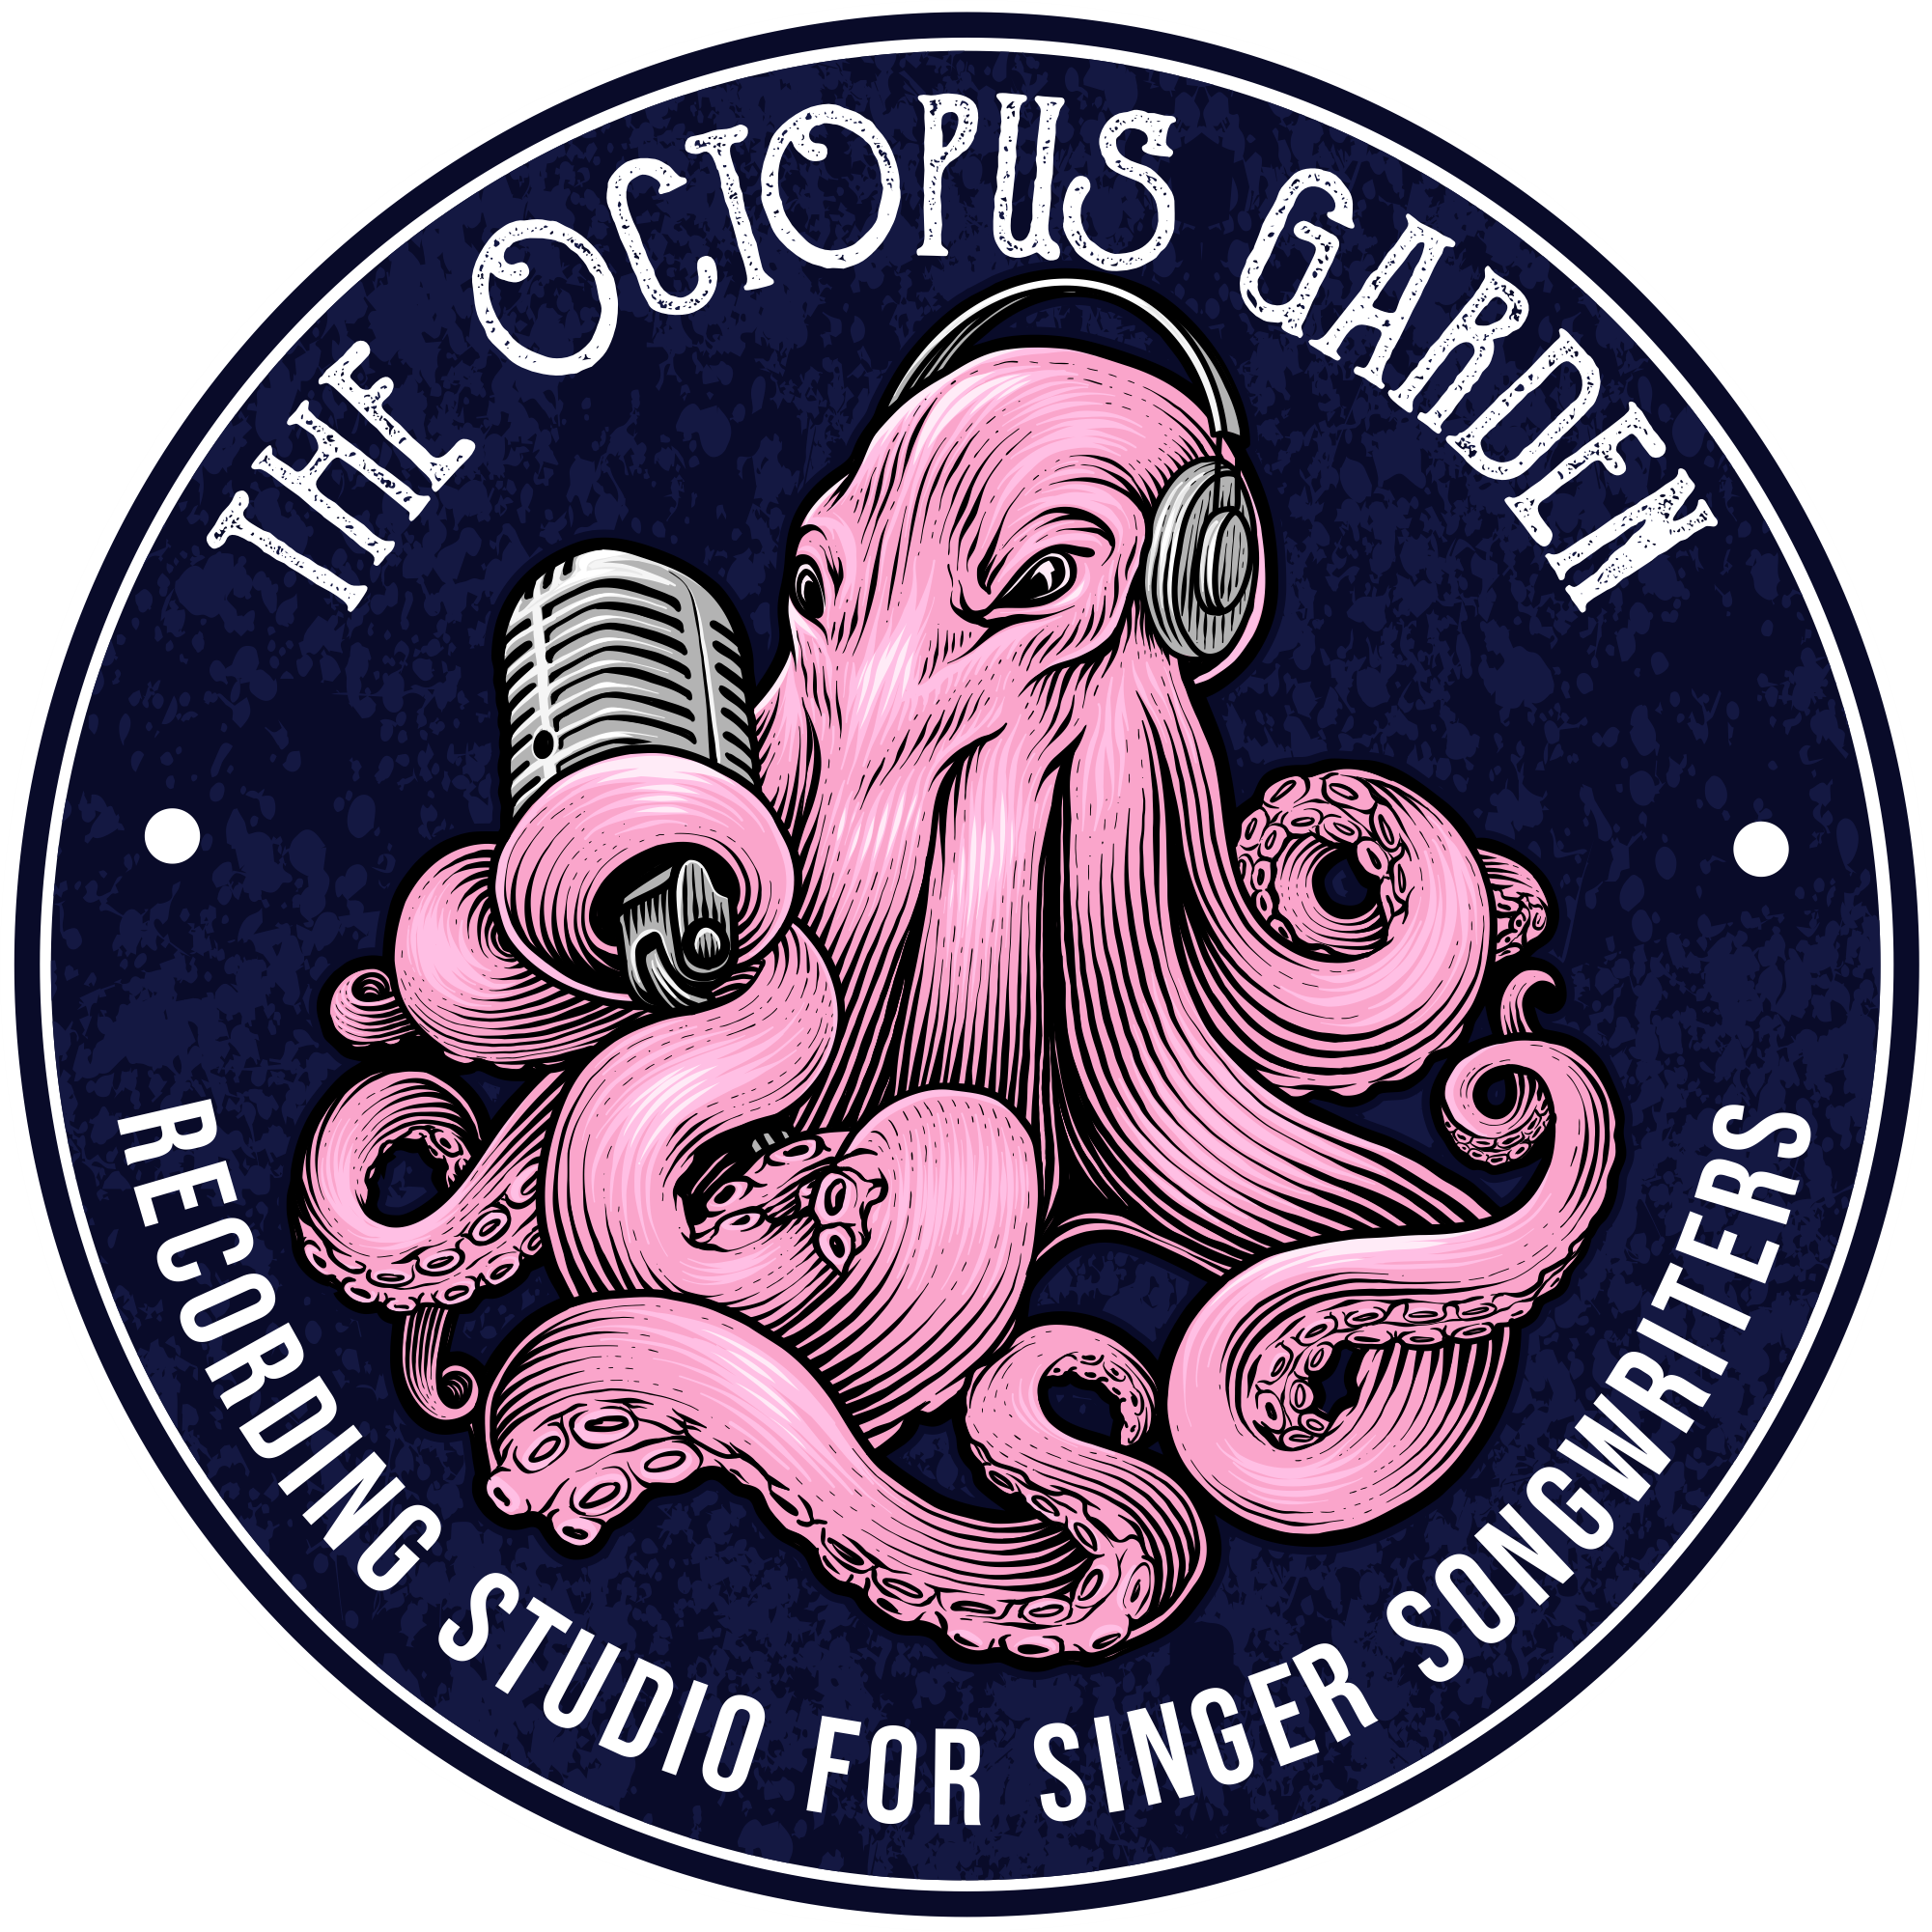 Octopus Garden Logo